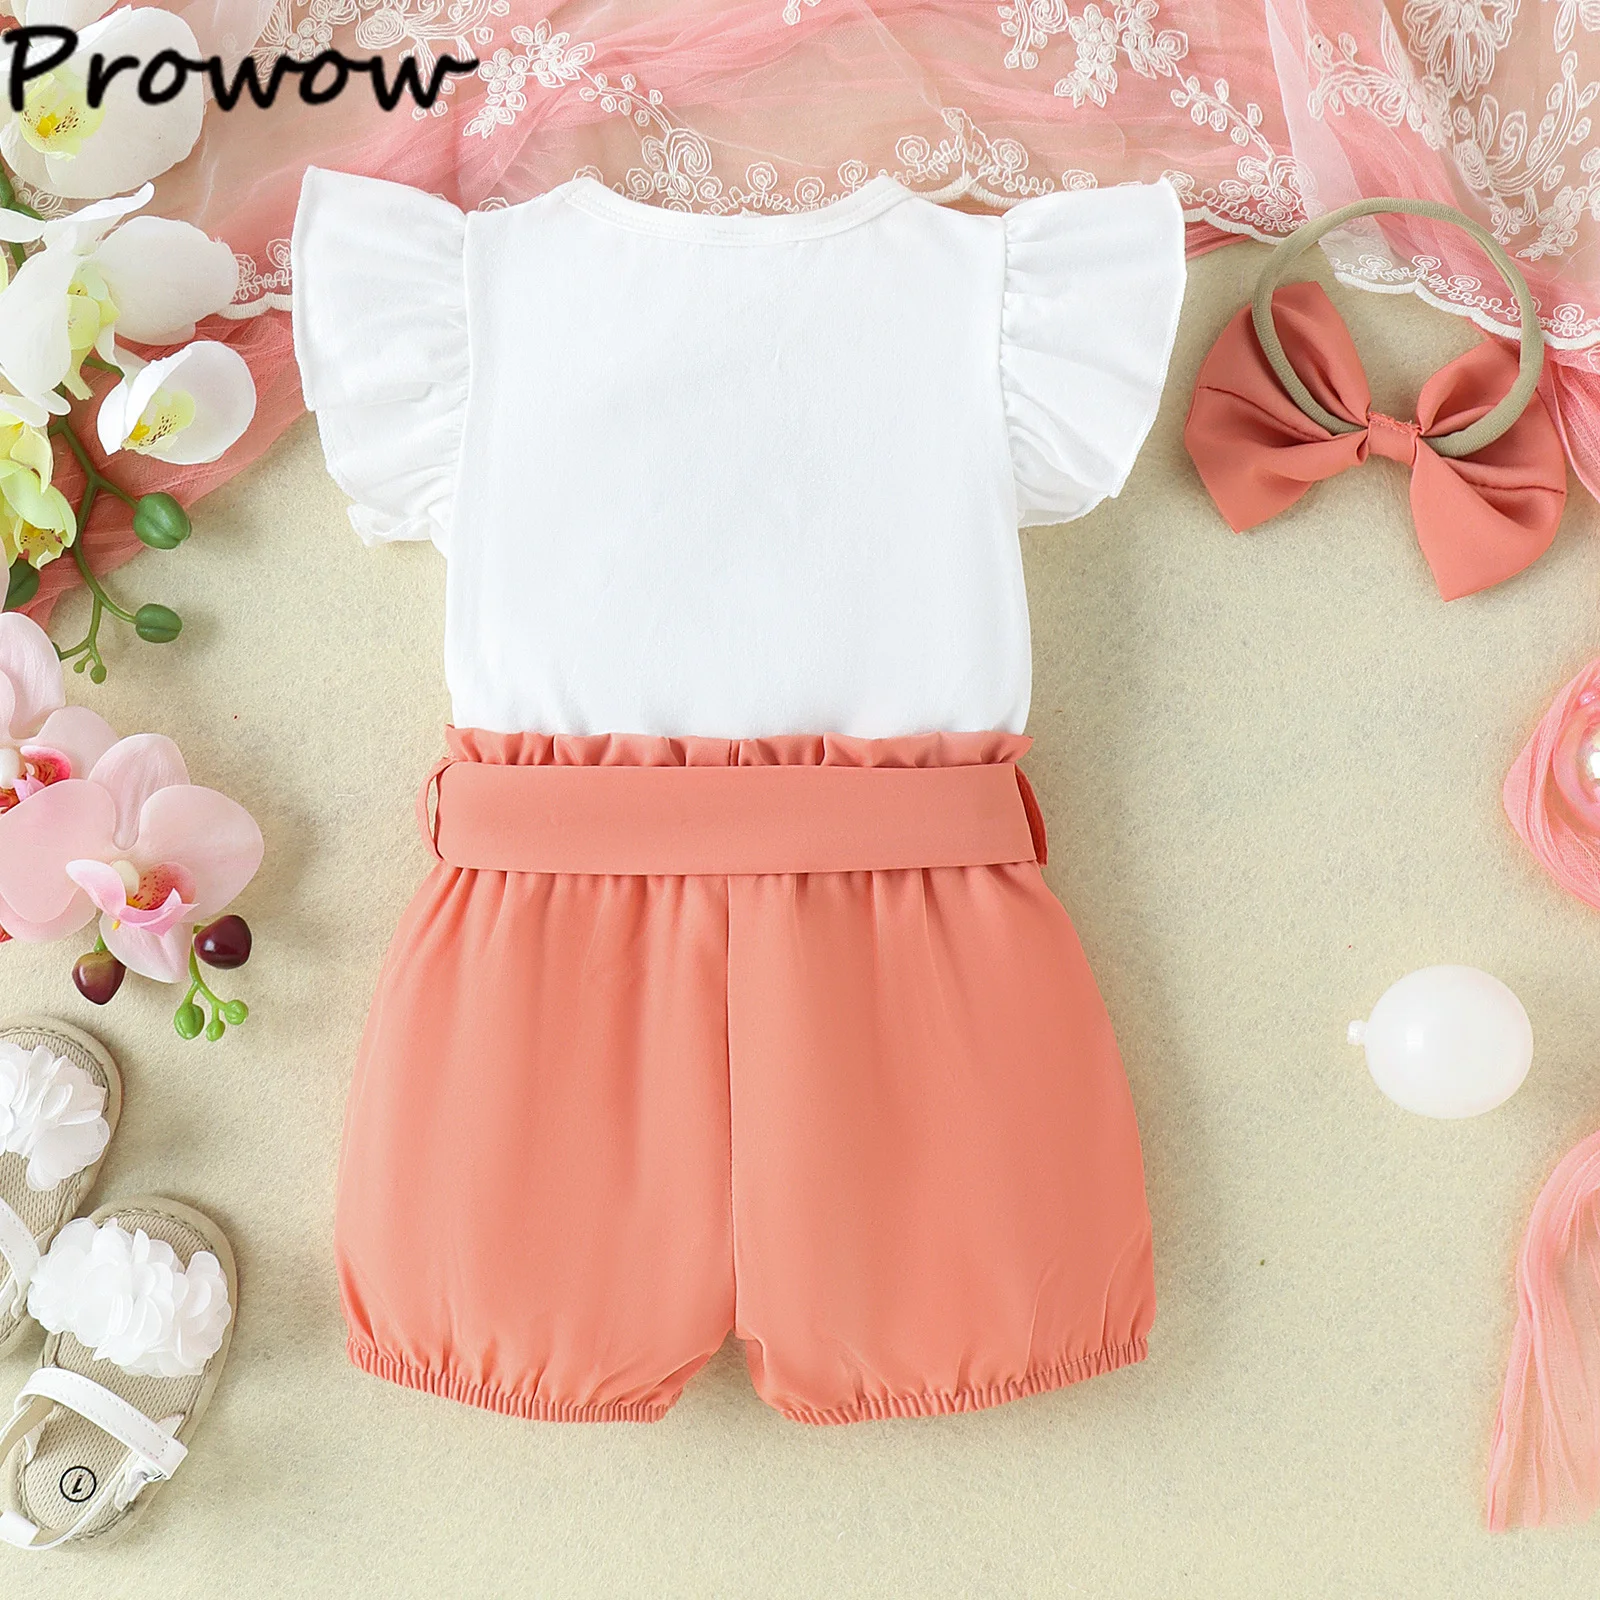 Prowow 0-18M Летни бебешки момичета облекло комплекти Fly ръкав бродерия дъга + колан шорти новородени дрехи момичета за бебета